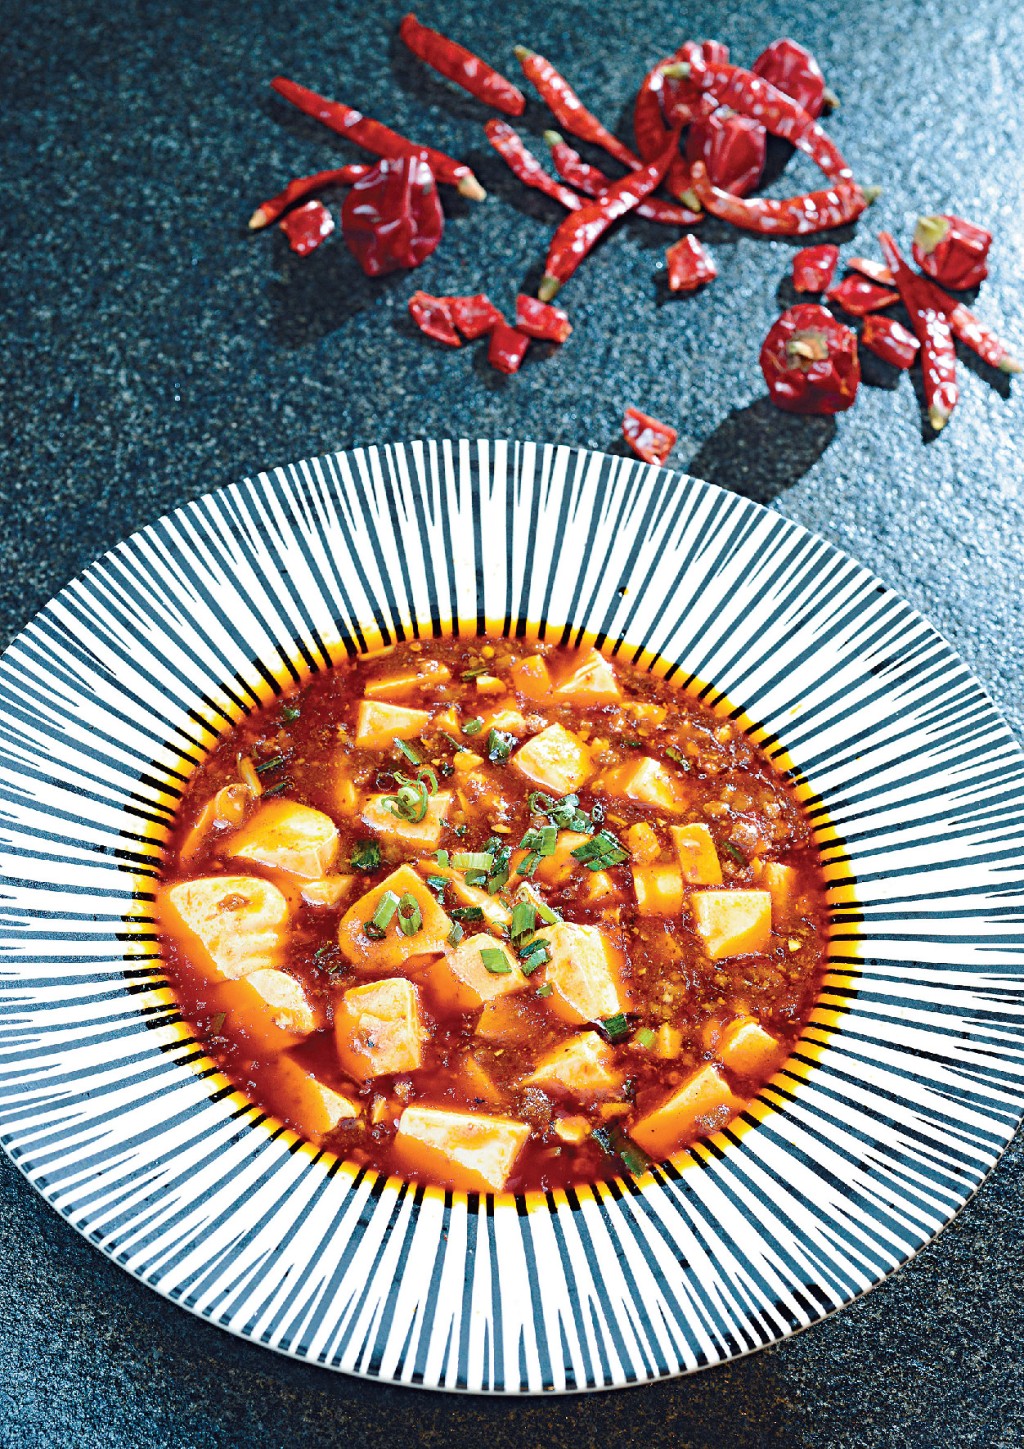 麻婆豆腐中的重要材料辣椒，于明朝传入中国。